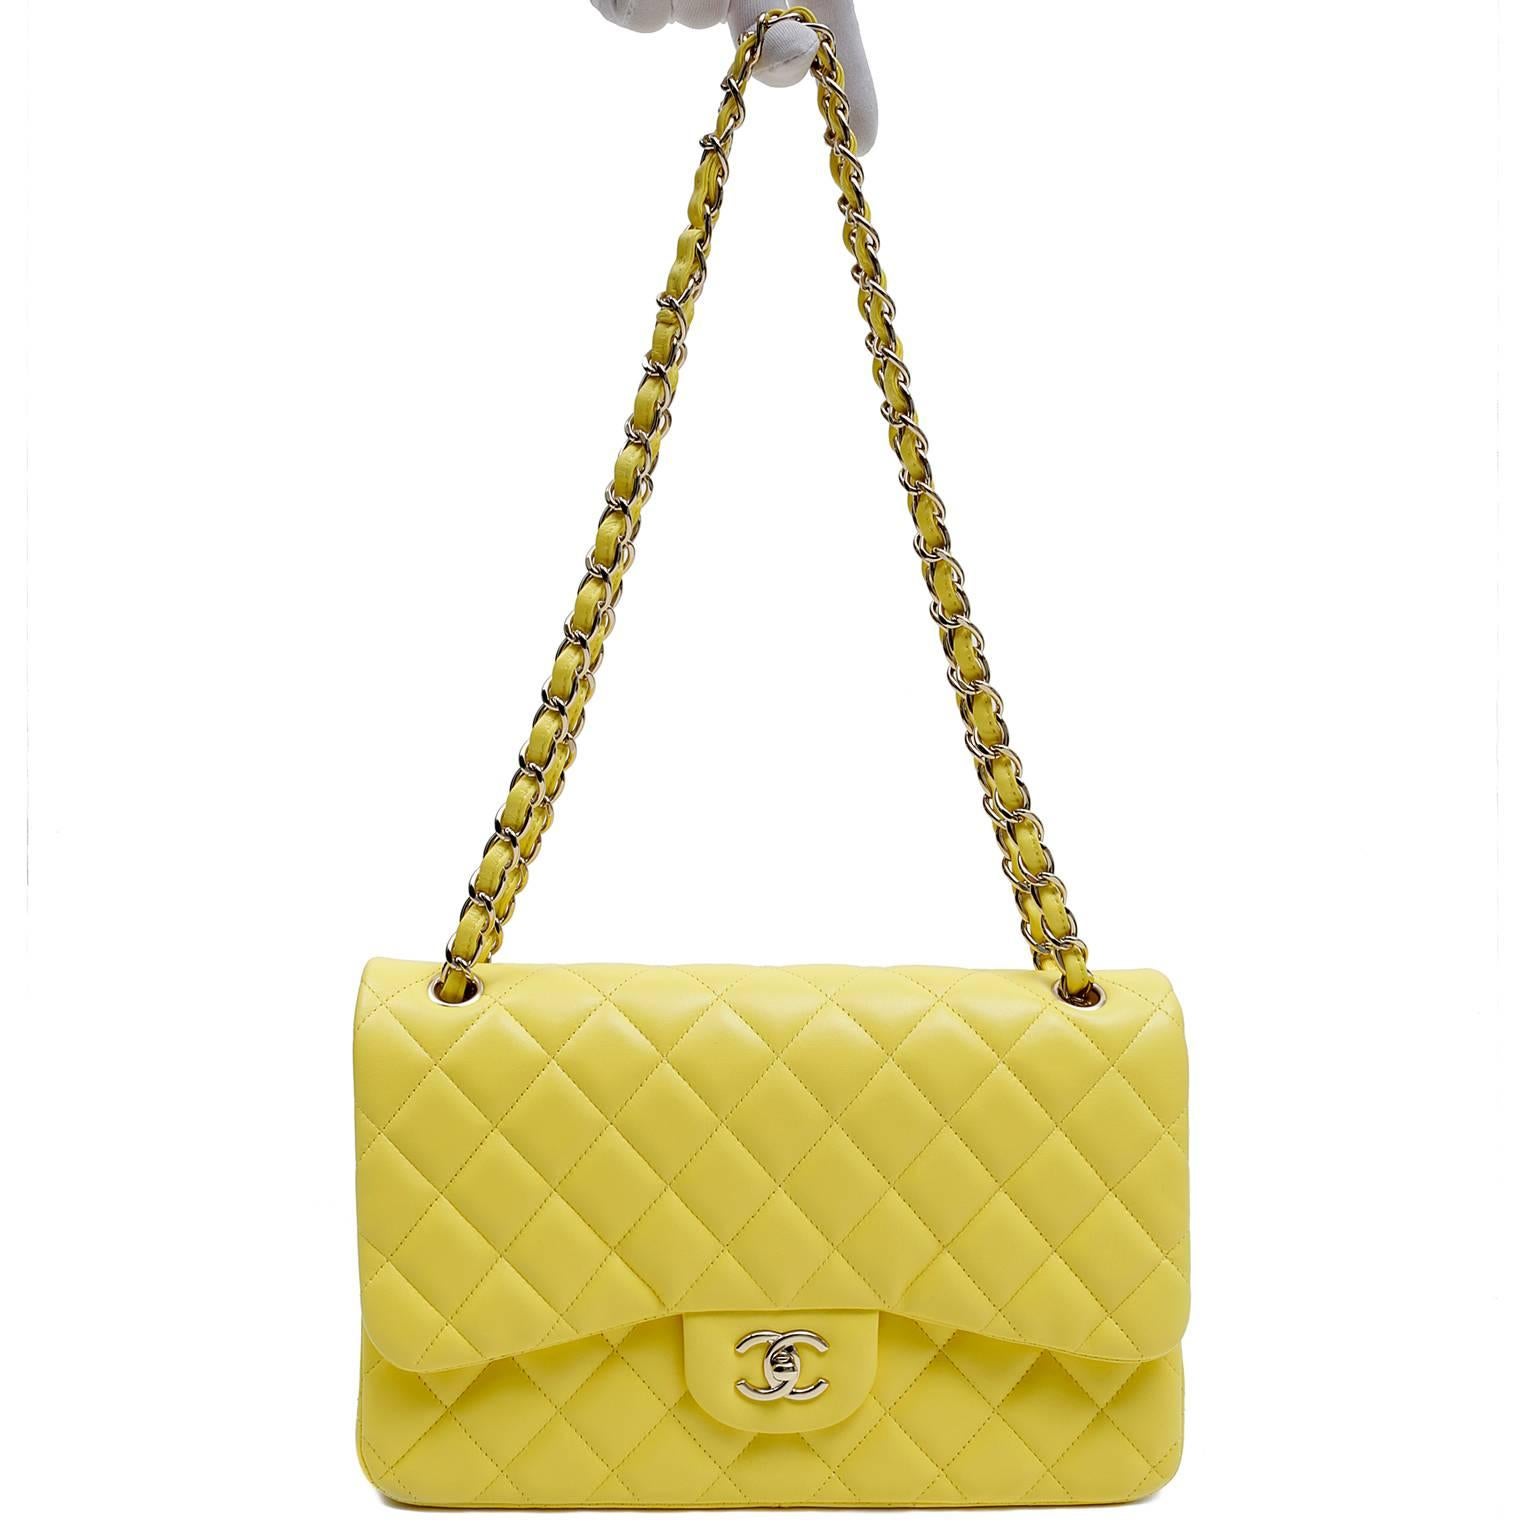 Chanel Yellow Leather Jumbo Classic Double Flap Bag 5